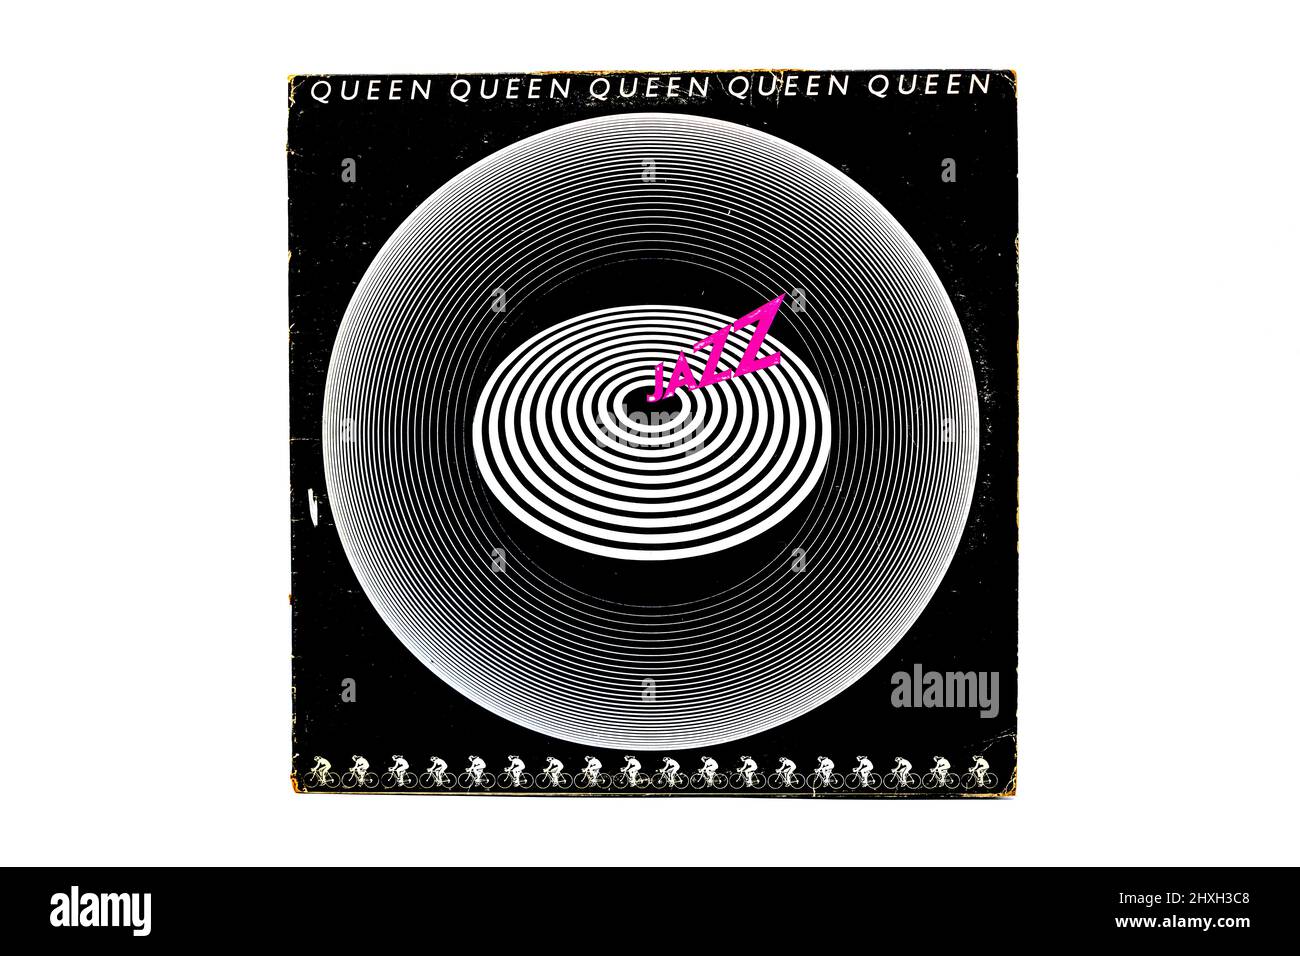 Queen Jazz vinyl LP record cover Stock Photo